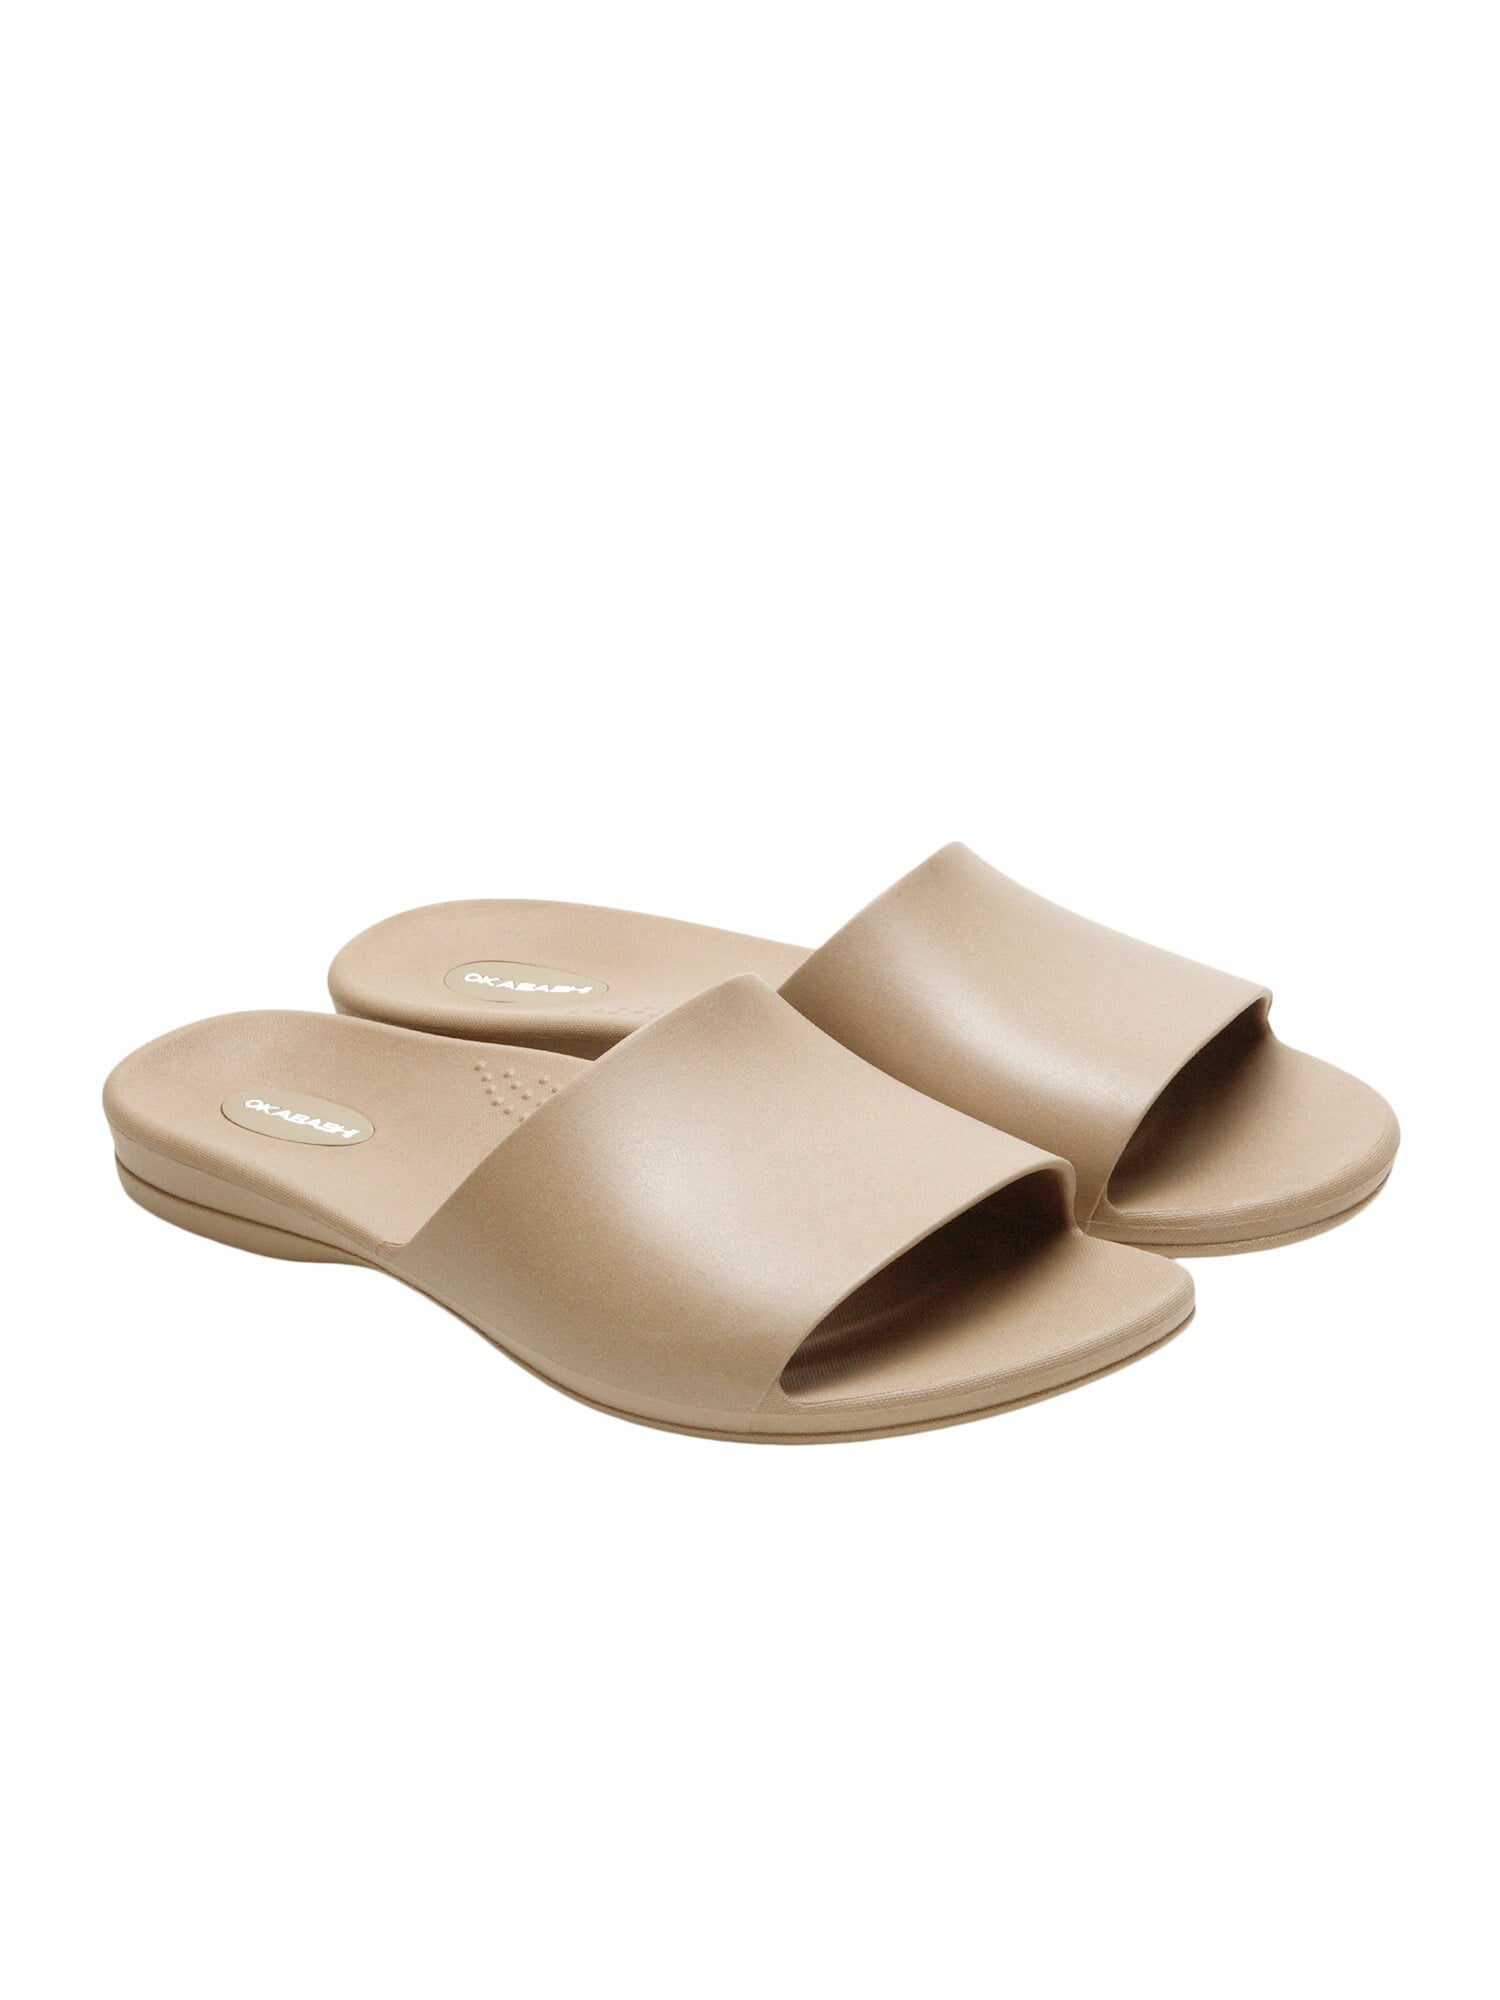 Okabashi Black Shoes Women's Cruise Sustainable Slide Sandals 